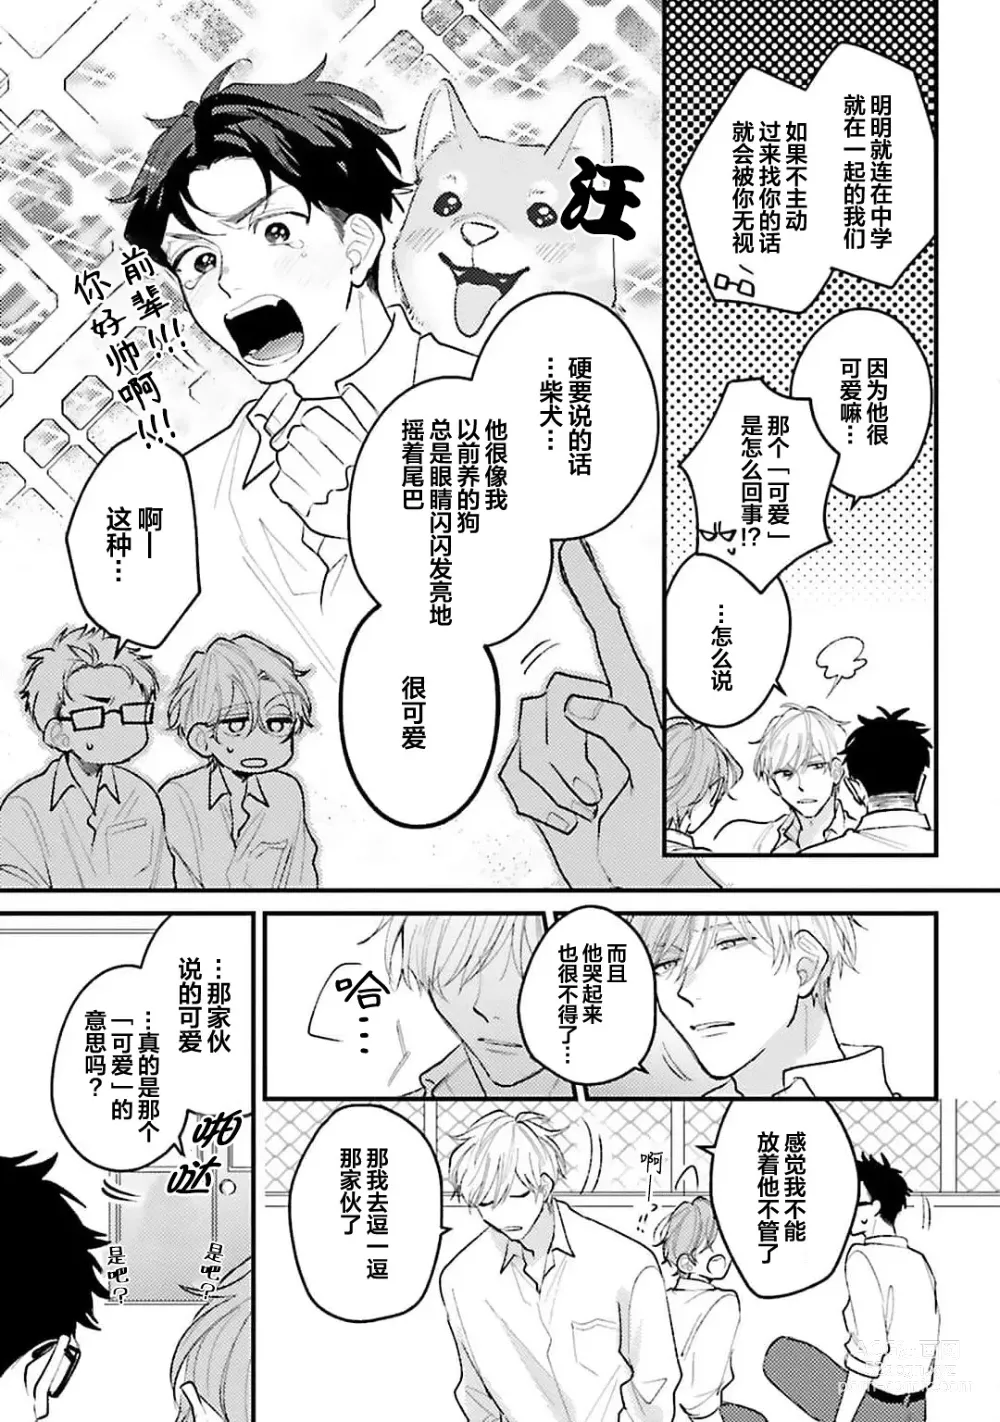 Page 19 of manga 眼泪与爱恋、都只属于我